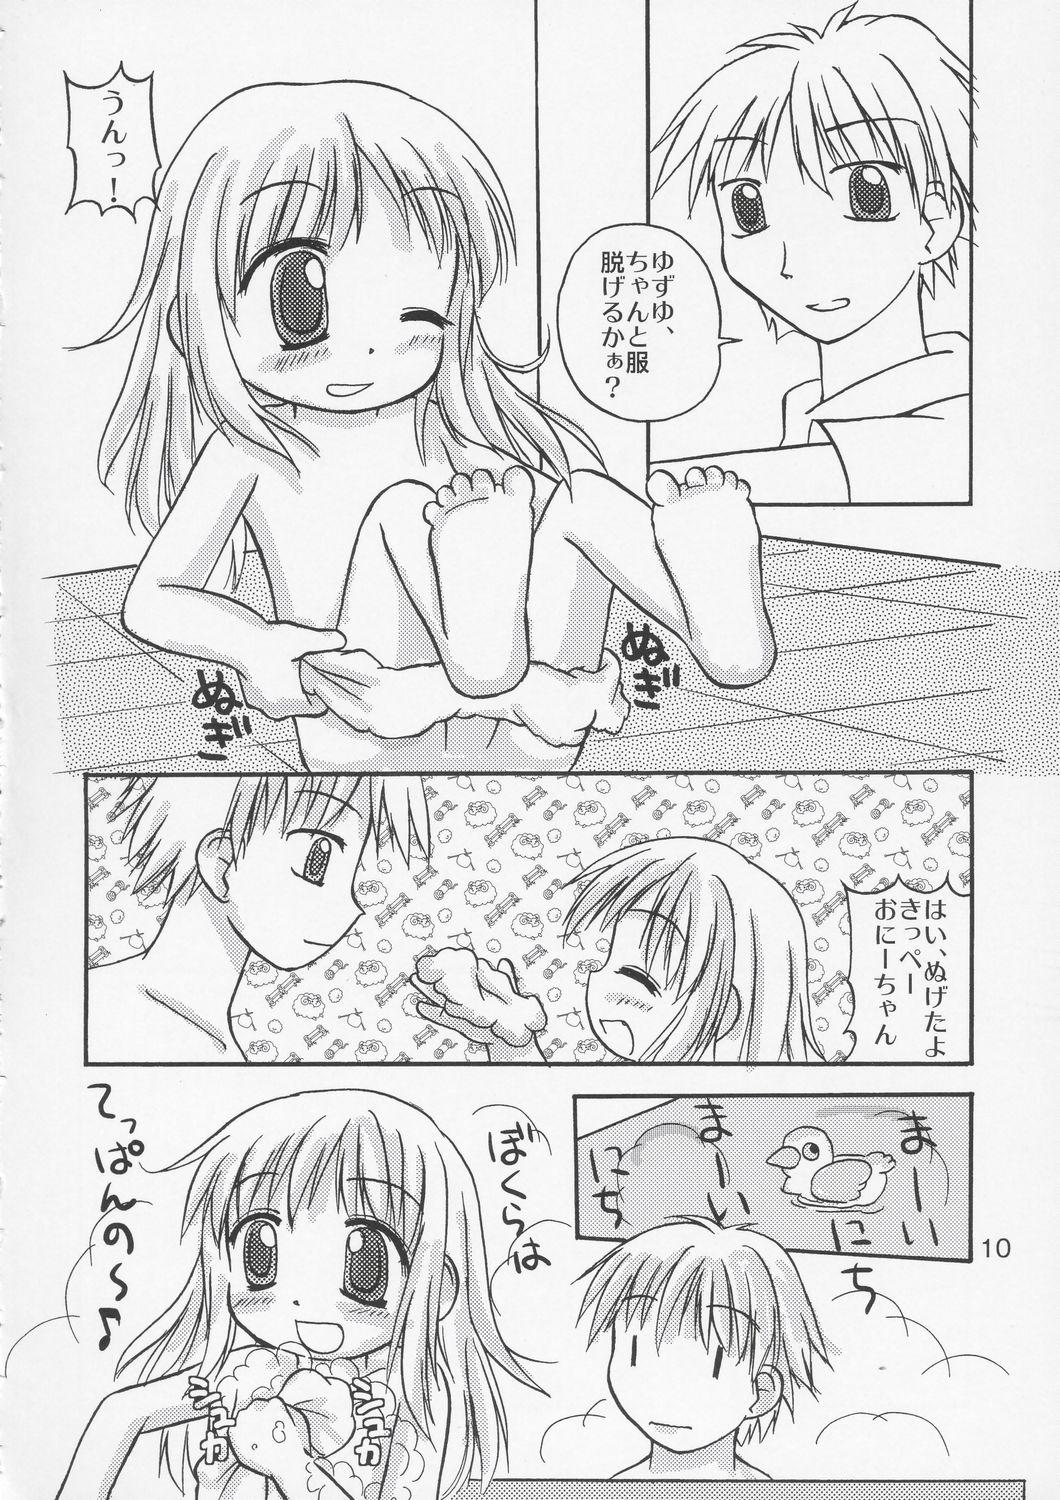 Exposed YuzuPan! - Aishiteruze baby Coeds - Page 9